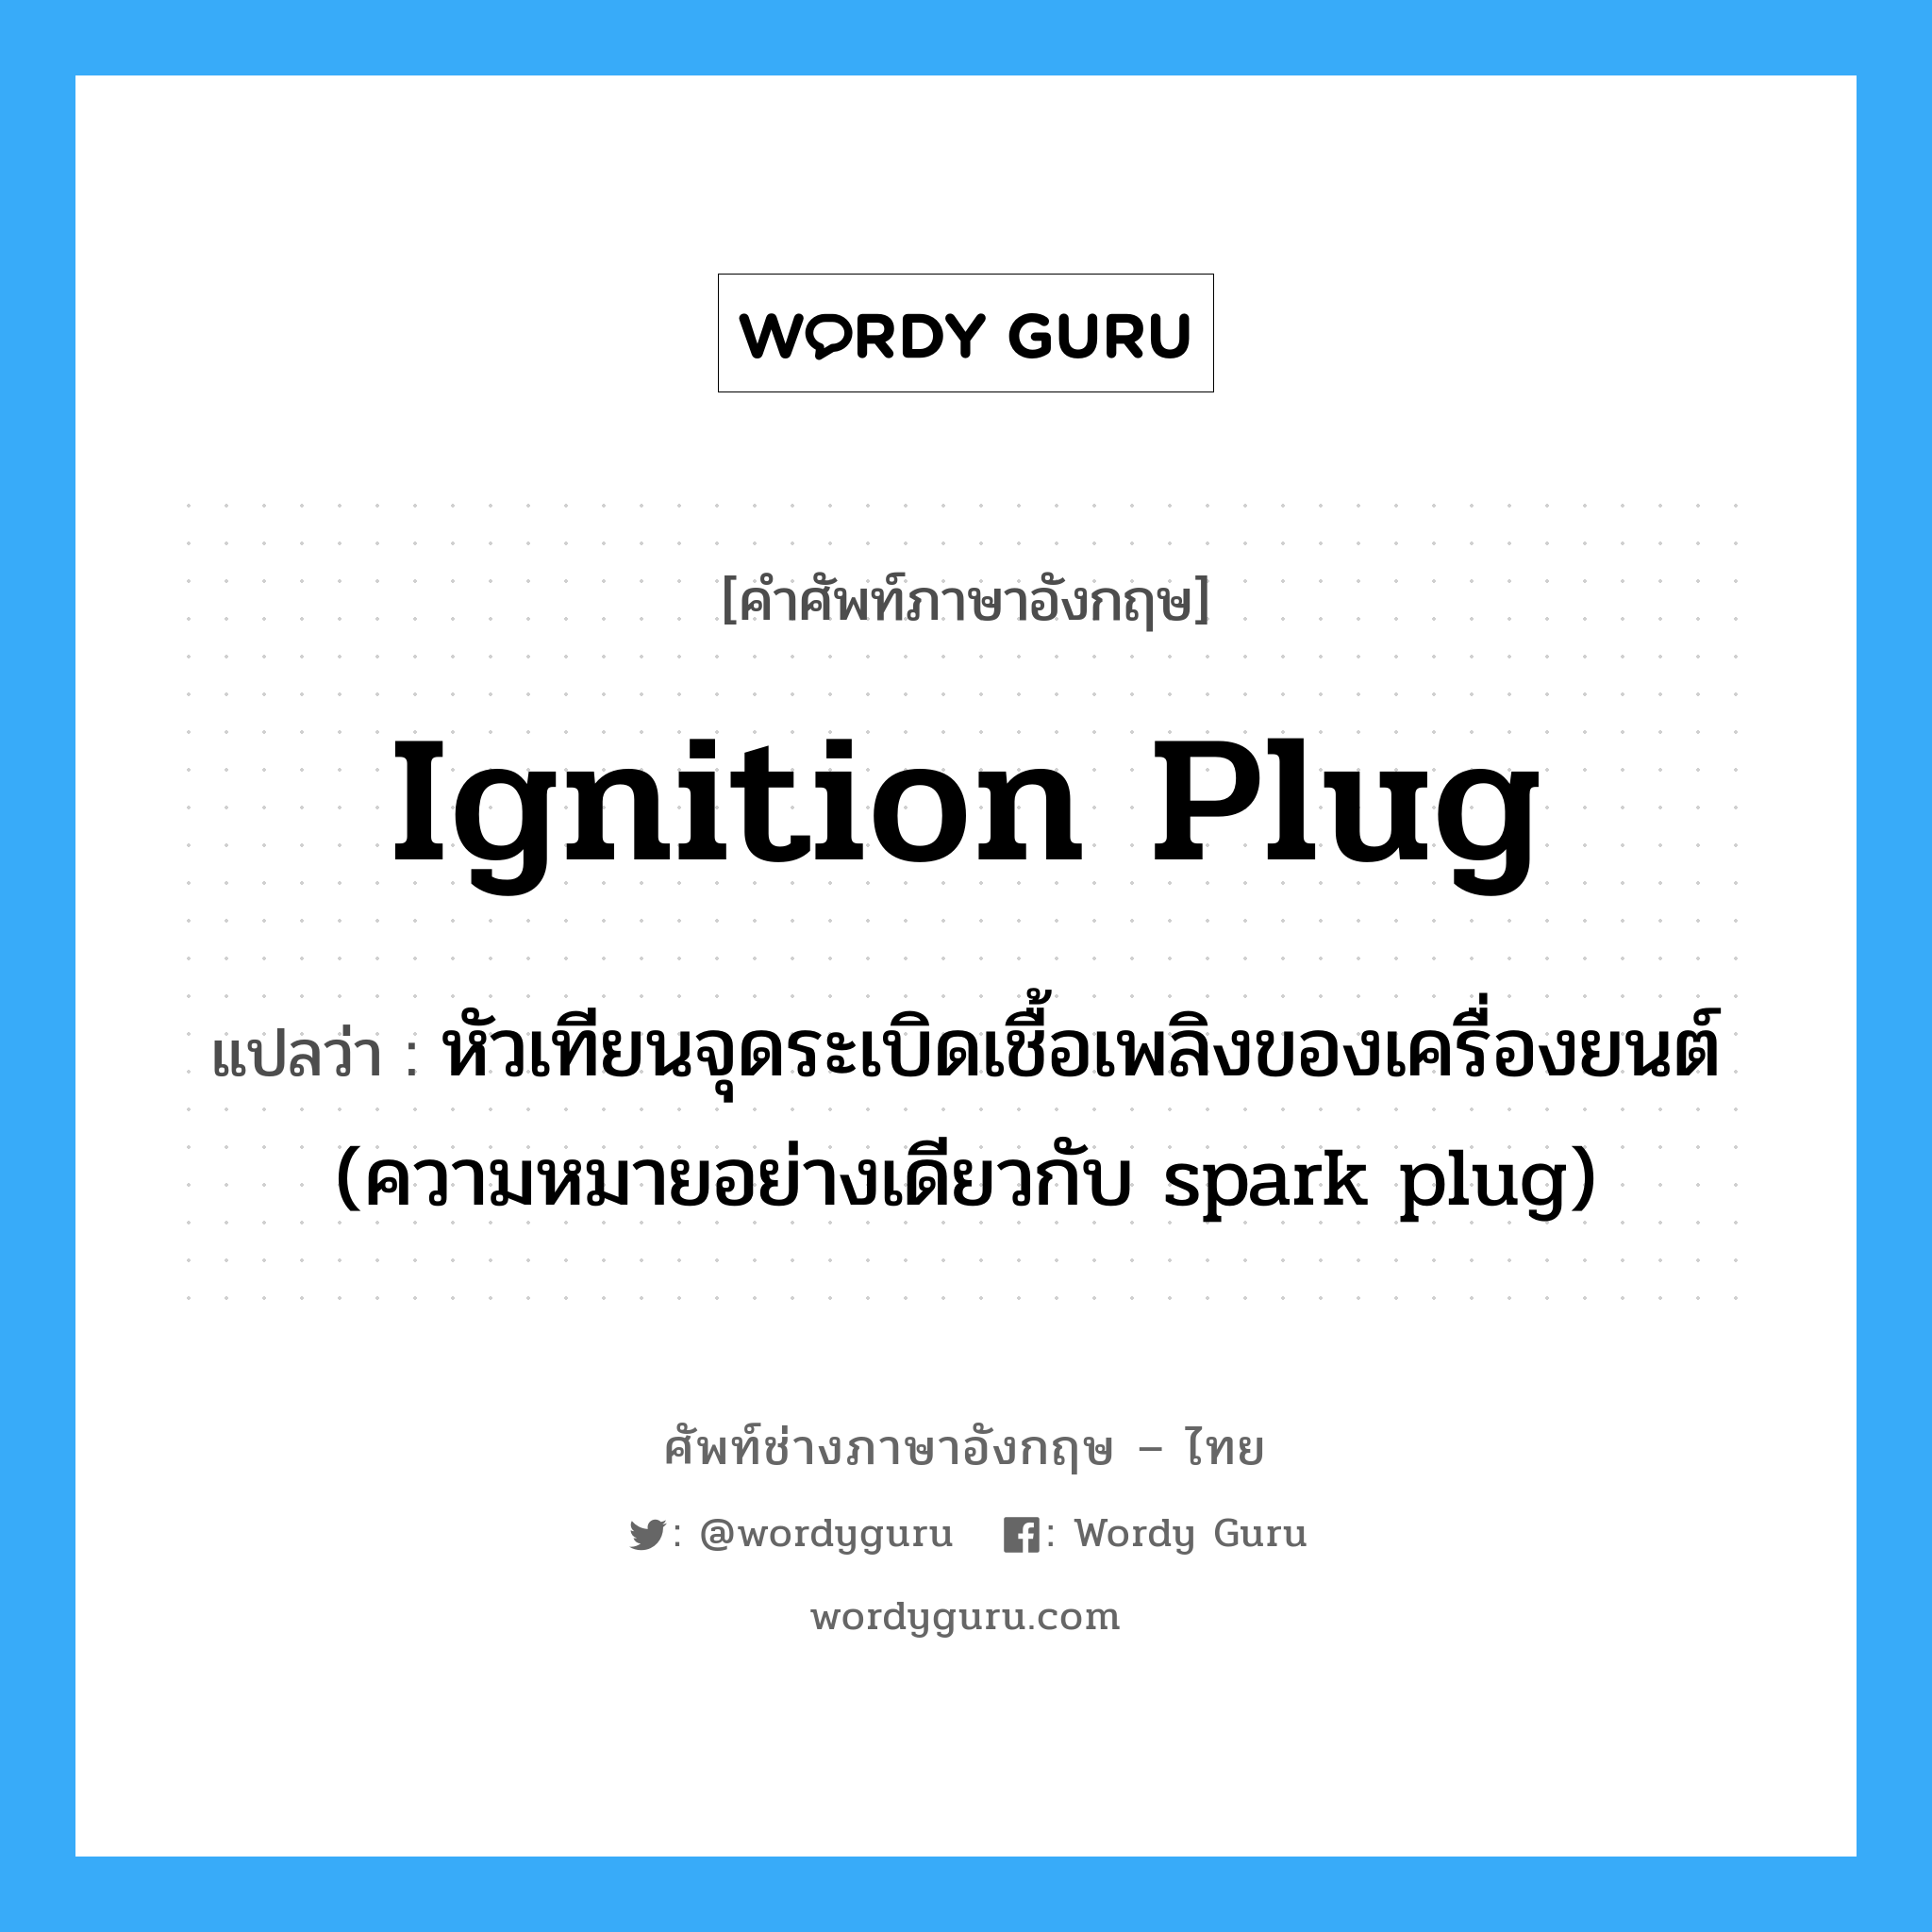 ignition plug แปลว่า?, คำศัพท์ช่างภาษาอังกฤษ - ไทย ignition plug คำศัพท์ภาษาอังกฤษ ignition plug แปลว่า หัวเทียนจุดระเบิดเชื้อเพลิงของเครื่องยนต์ (ความหมายอย่างเดียวกับ spark plug)